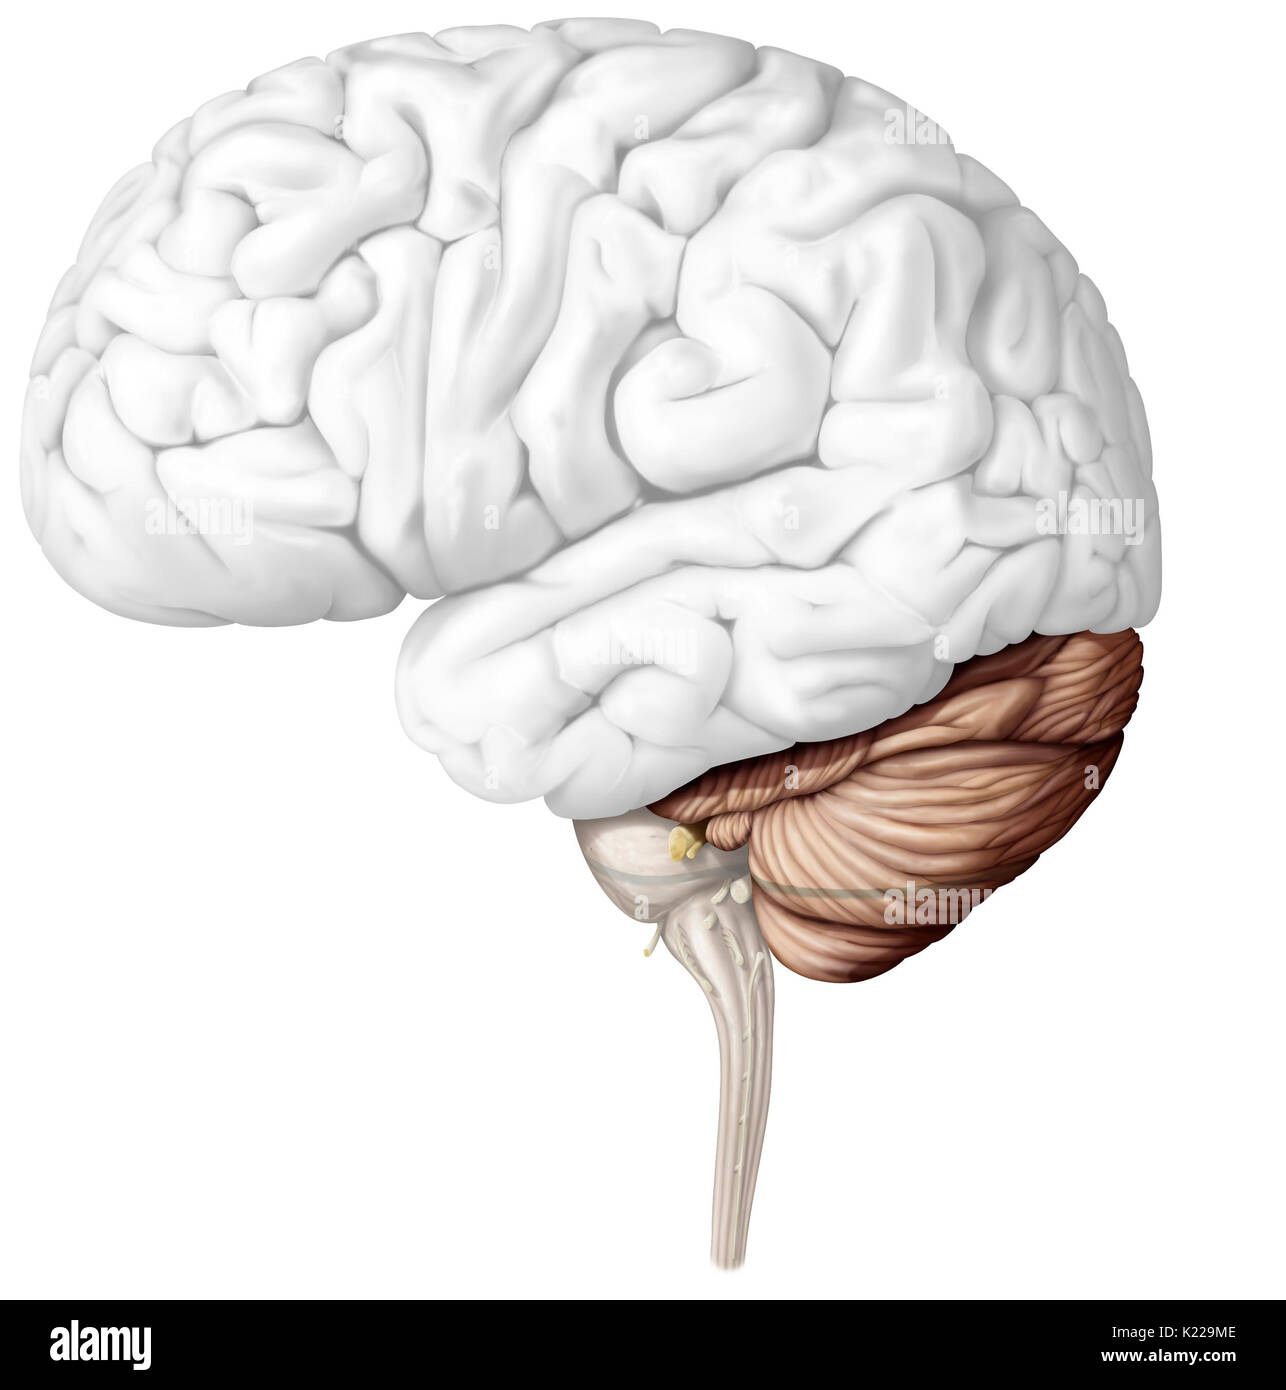 Il cervelletto è la parte del cervello che si trova sotto il cervello dietro il tronco cerebrale. Essa assicura la coordinazione motoria nonché il mantenimento dell equilibrio e postura. Il cervelletto permette anche di armonioso movimenti volontari, senza sforzo inutile, senza perdere equilibrio e senza tremare. Foto Stock